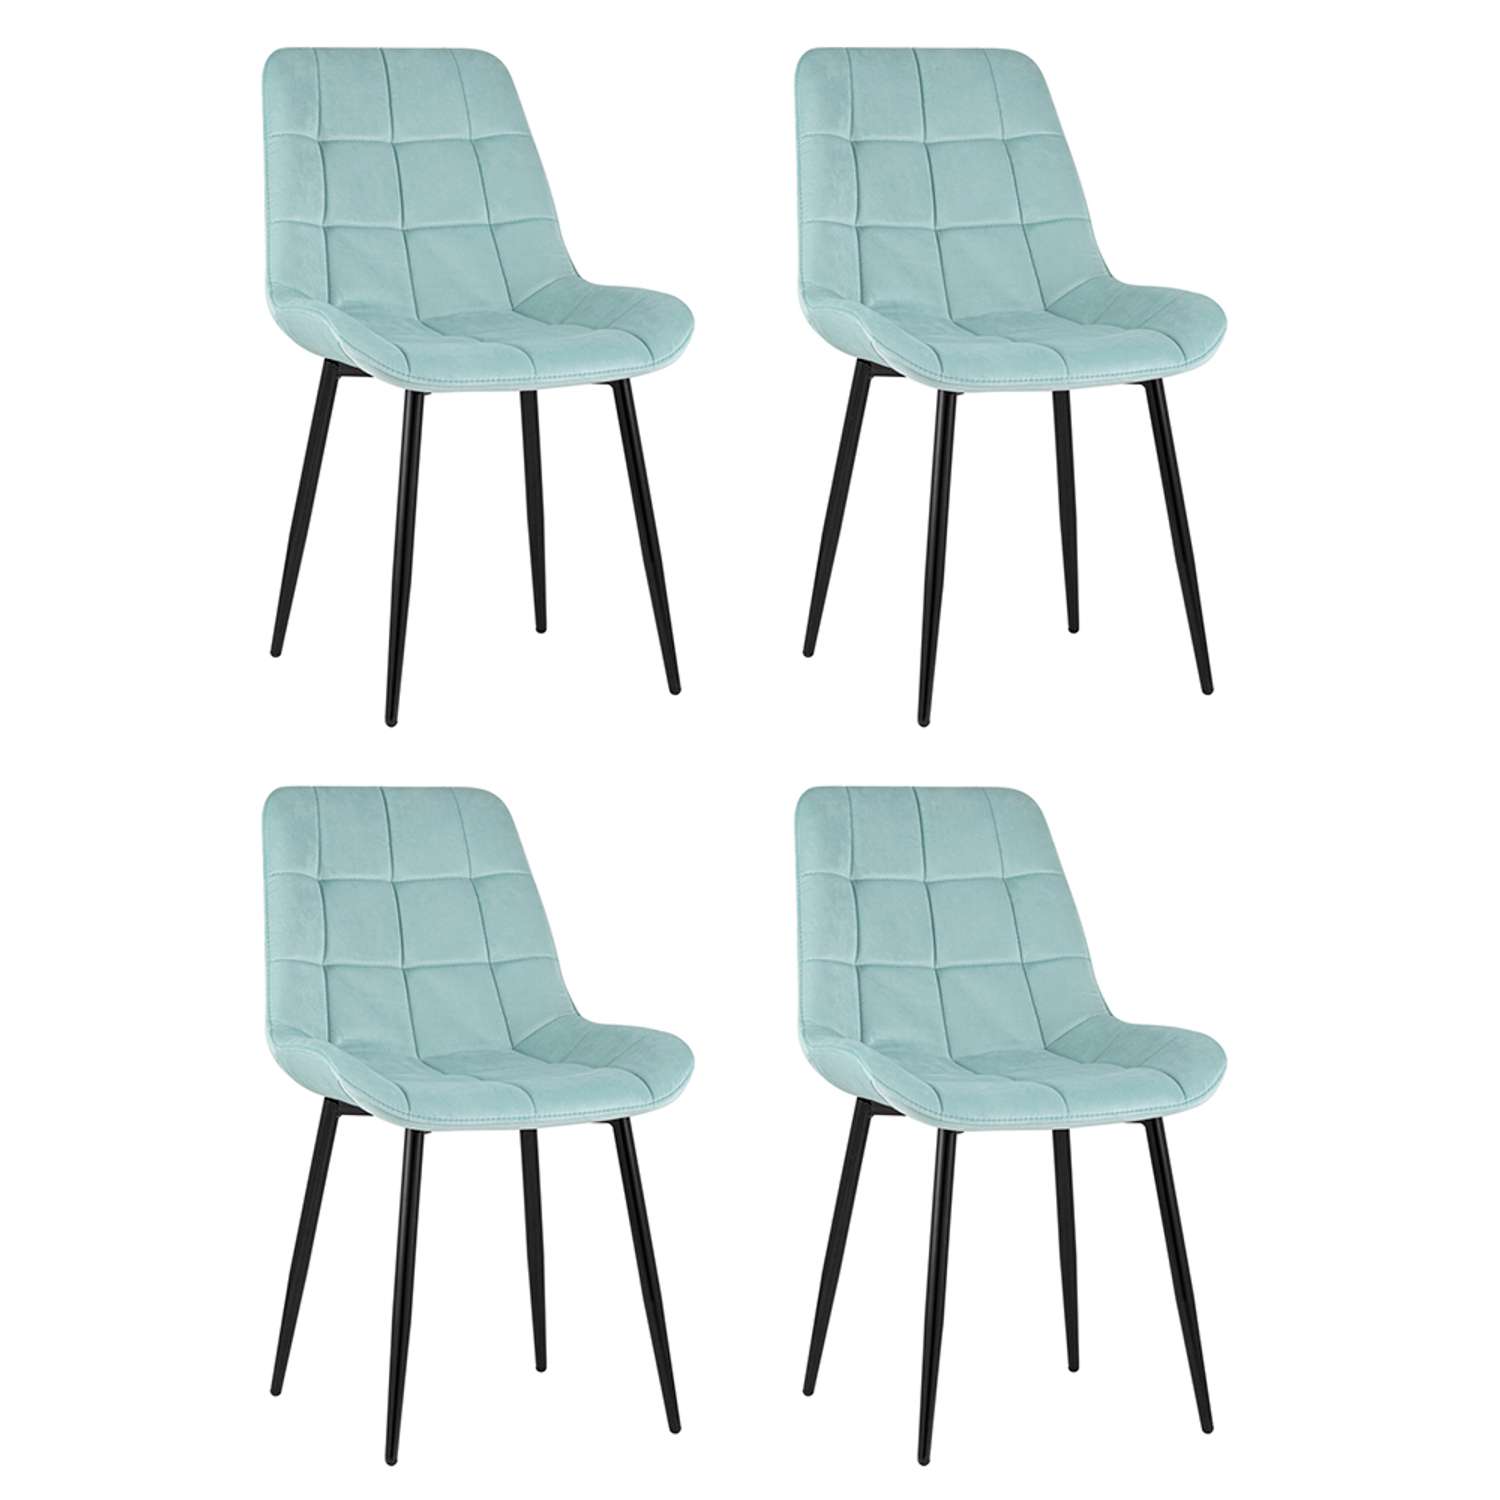 Комплект стульев Stool Group для кухни 4 шт Флекс велюр светло-голубой - фото 2